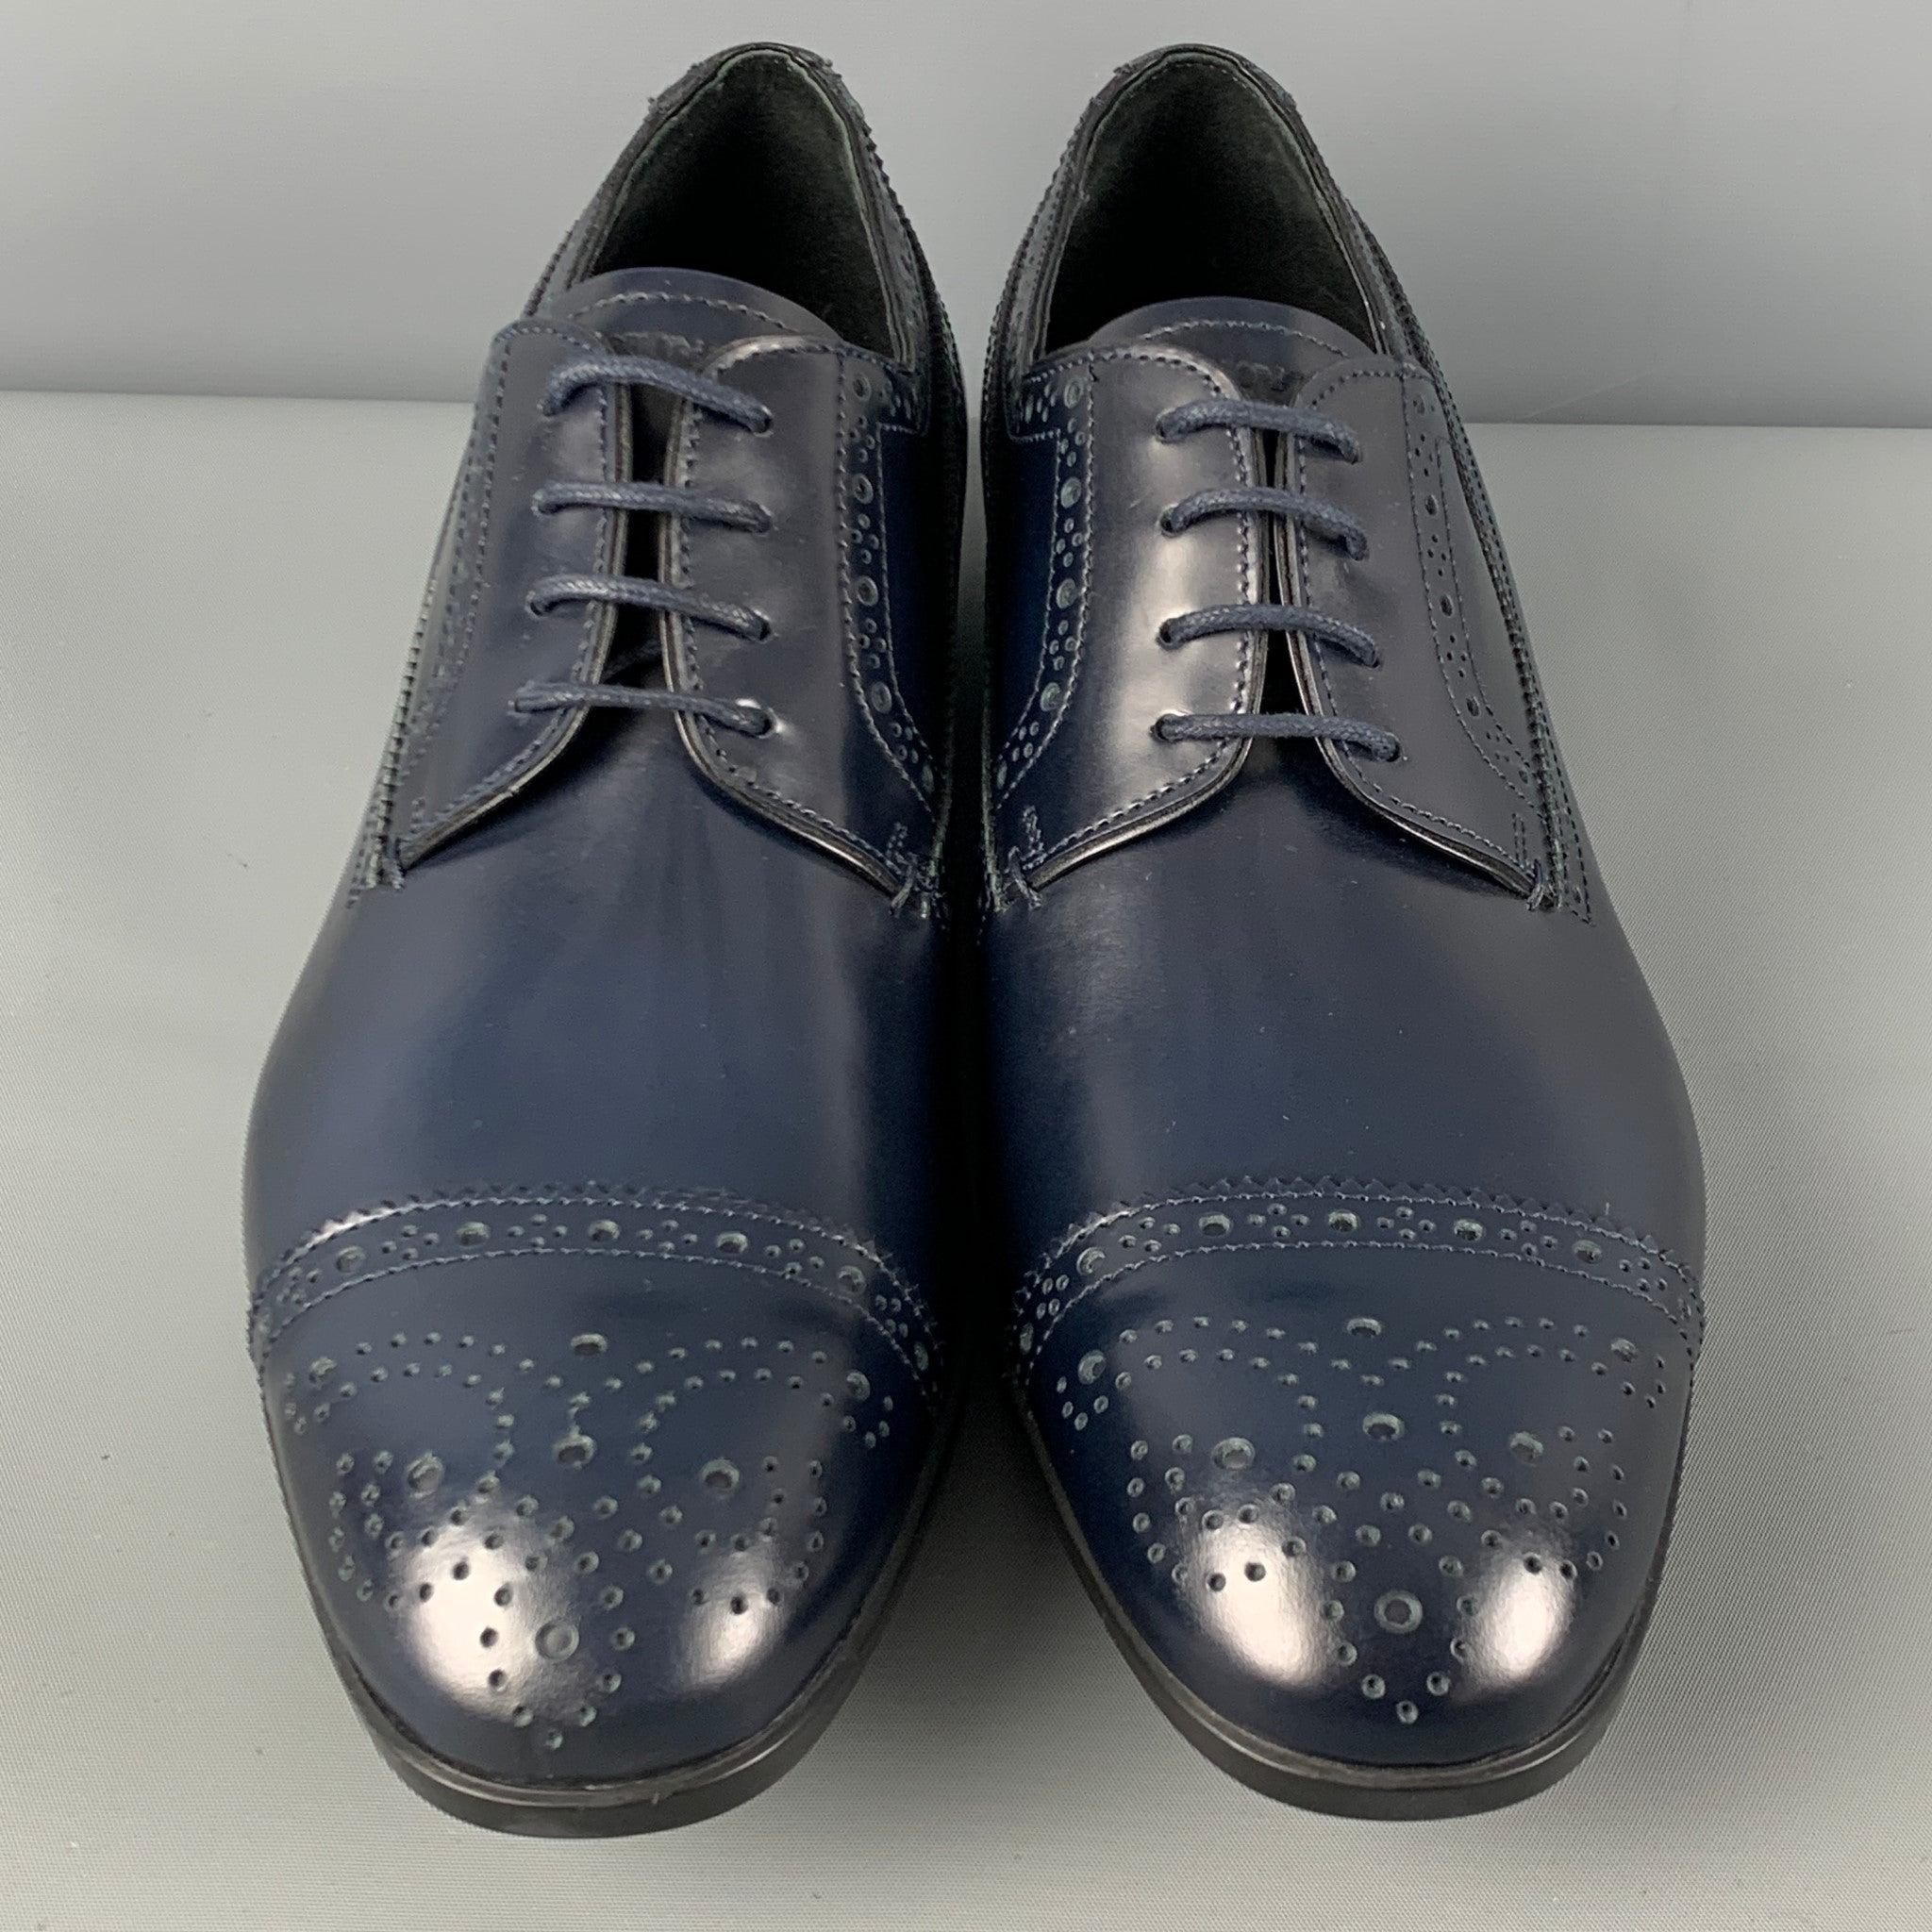  EMPORIO ARMANI - Chaussures à lacets en cuir perforé bleu marine, taille 9 Pour hommes 